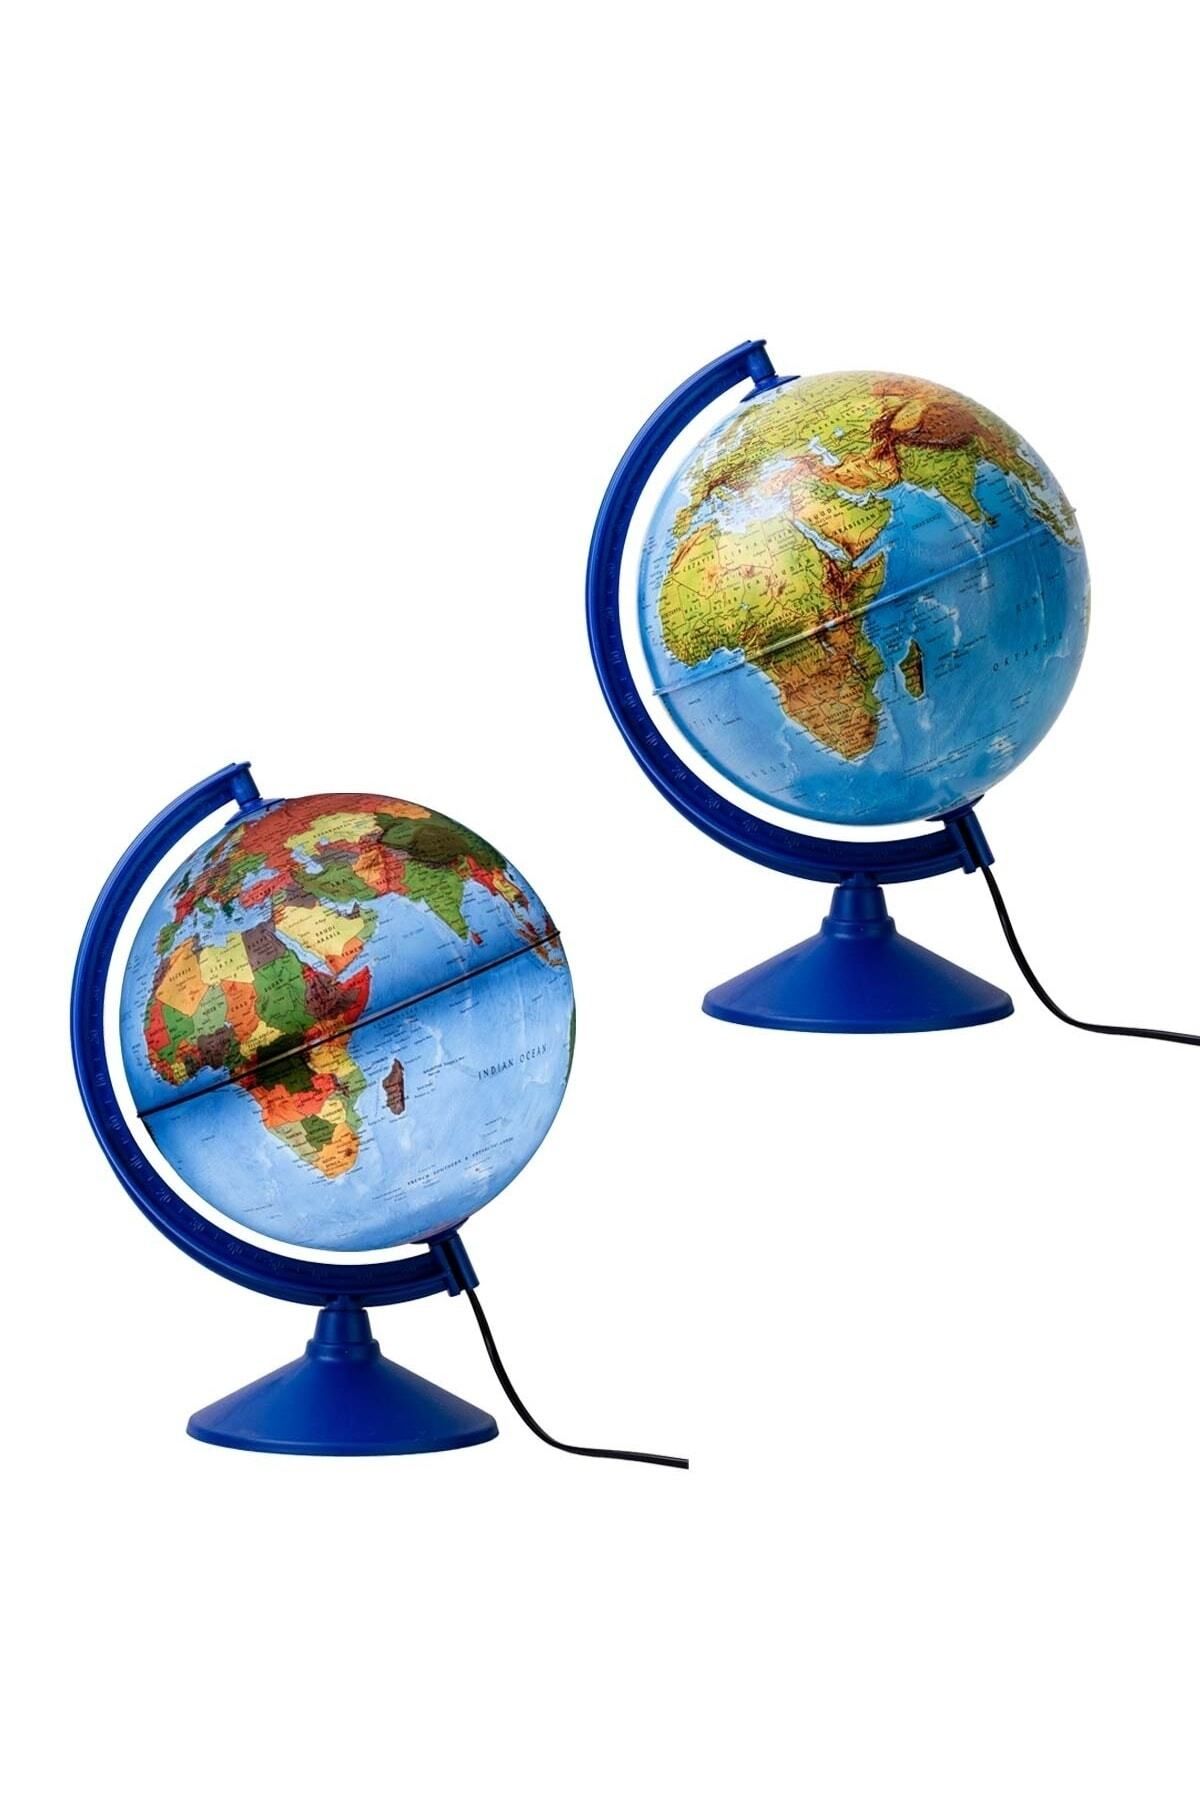 Gürbüz Işıklı Küre - 30 cm - Hem Fiziki Hem Siyasi Dünya Küresi 41301